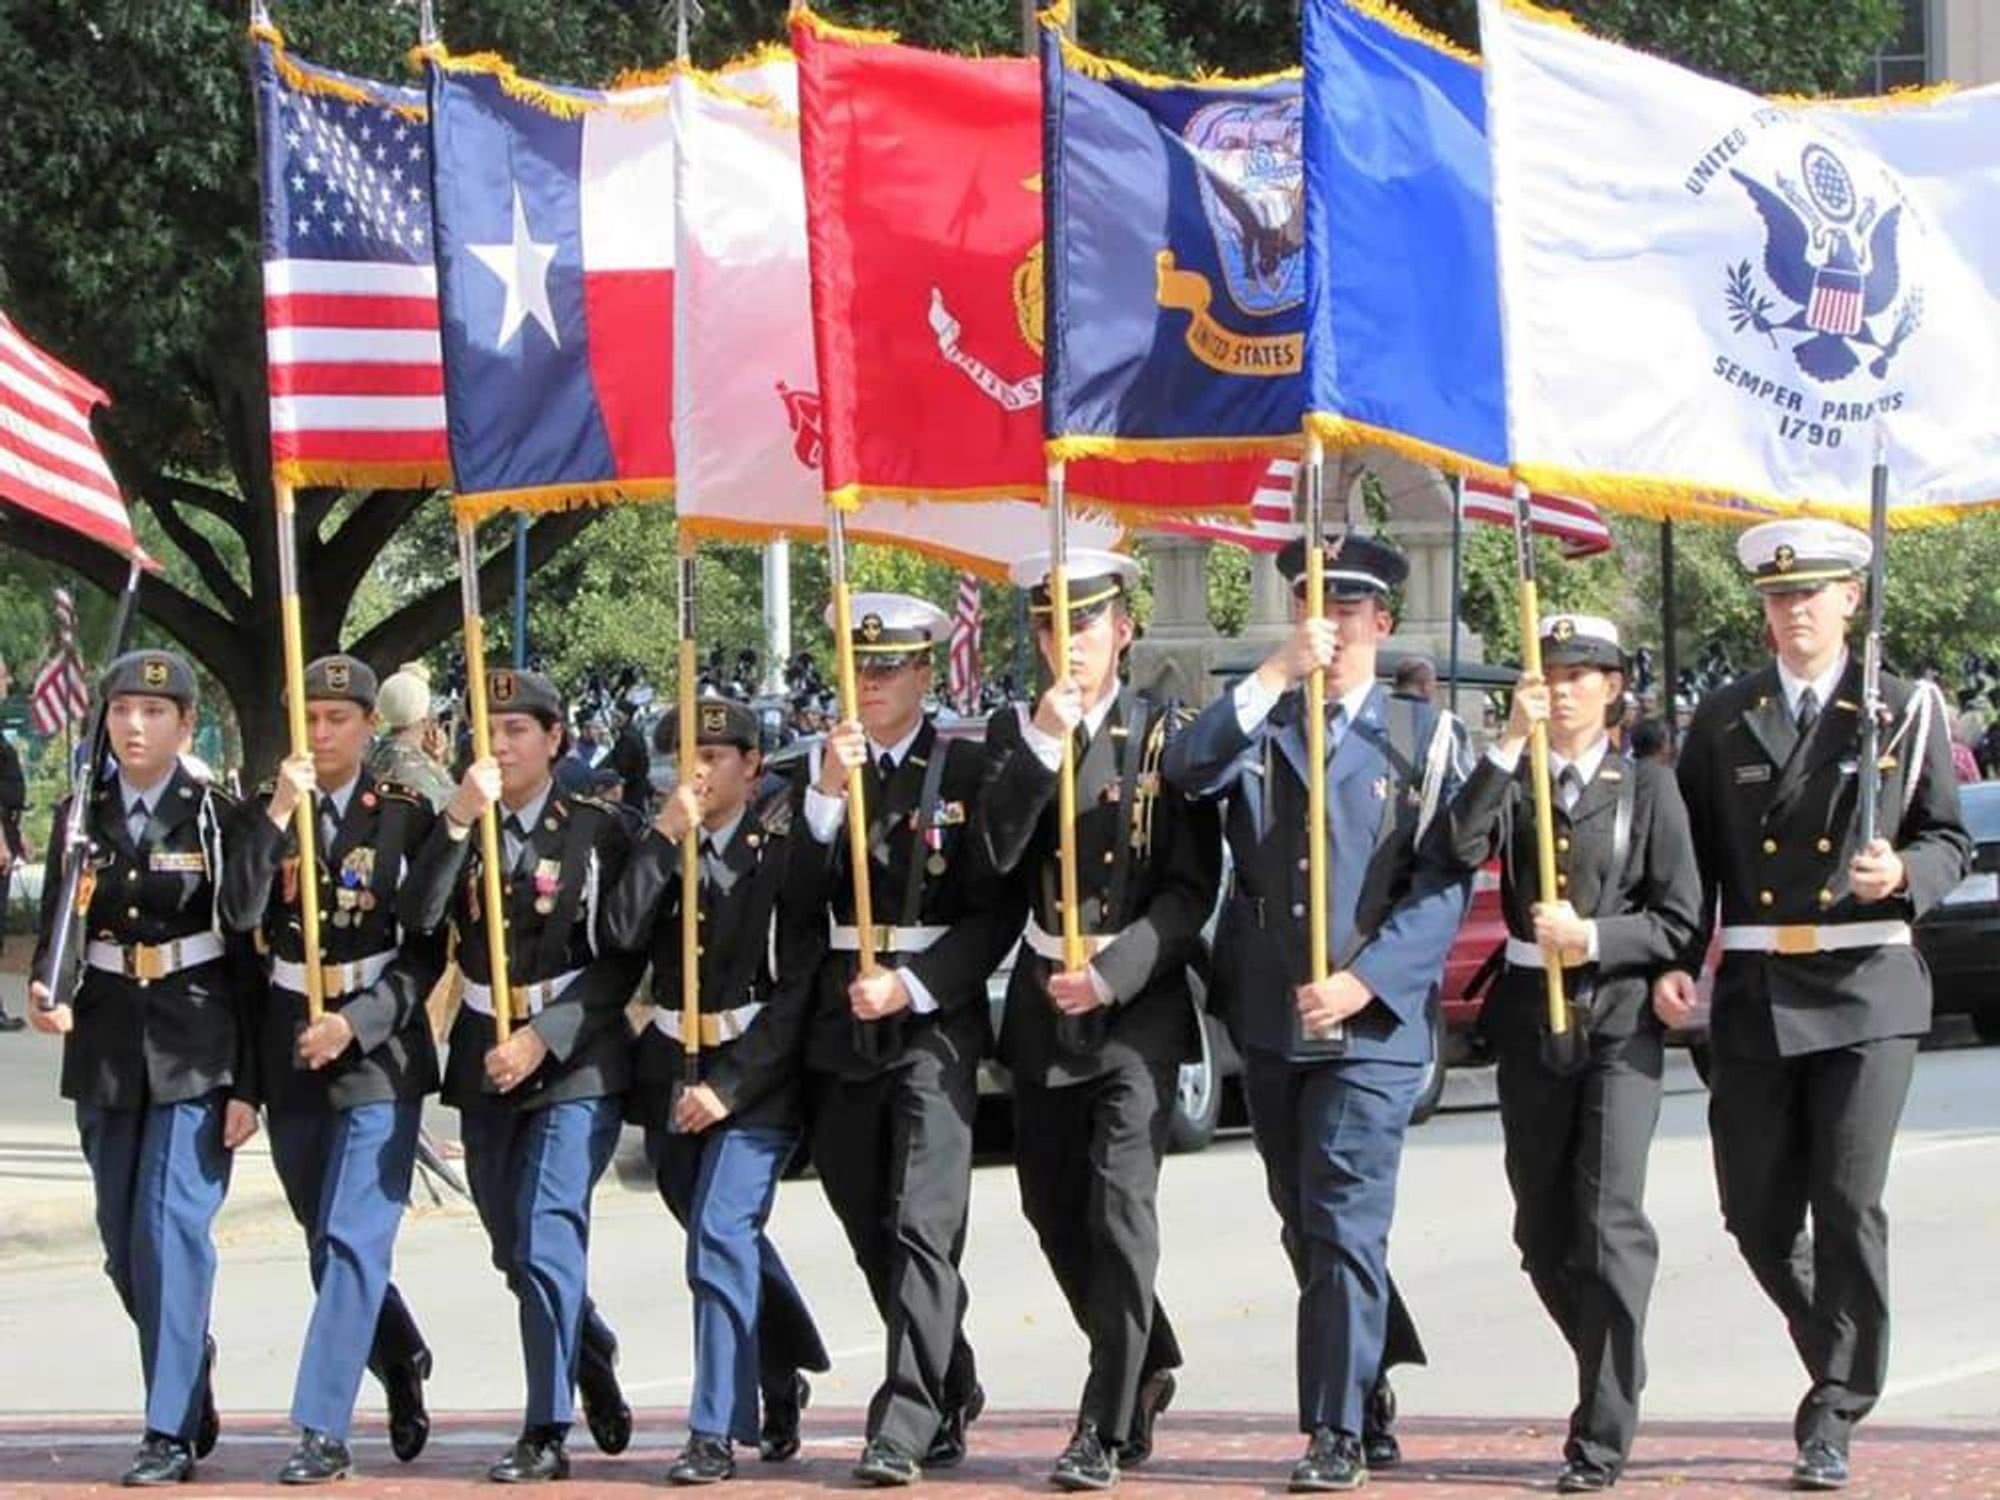 Tarrant Co. Veterans Day Parade